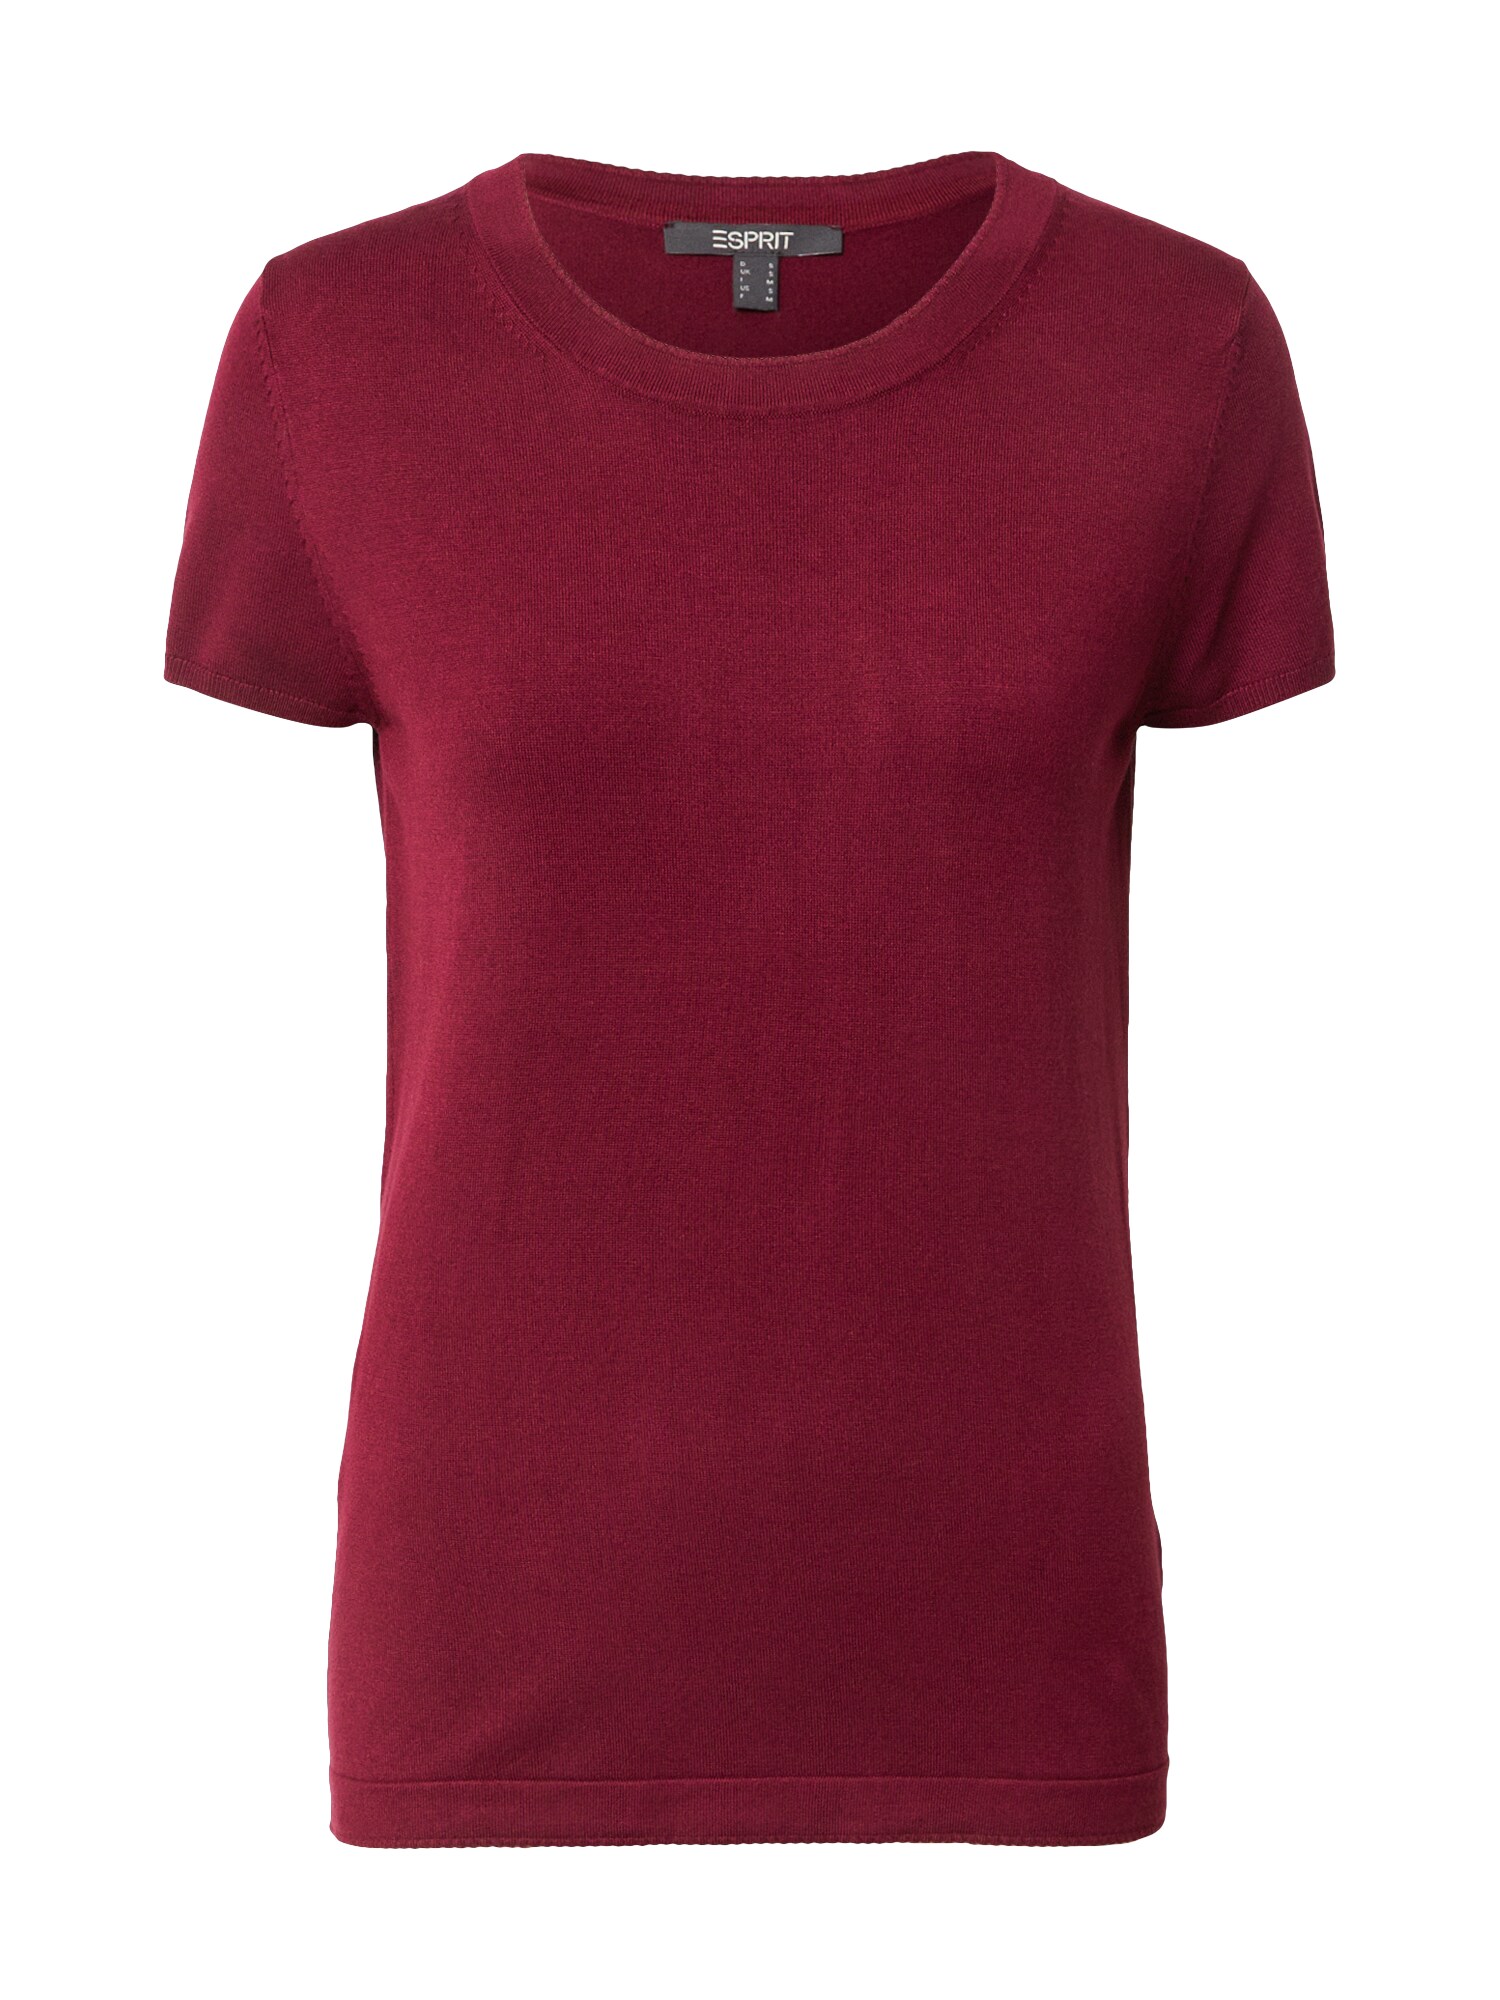 Esprit Collection Marškinėliai  vyšninė spalva